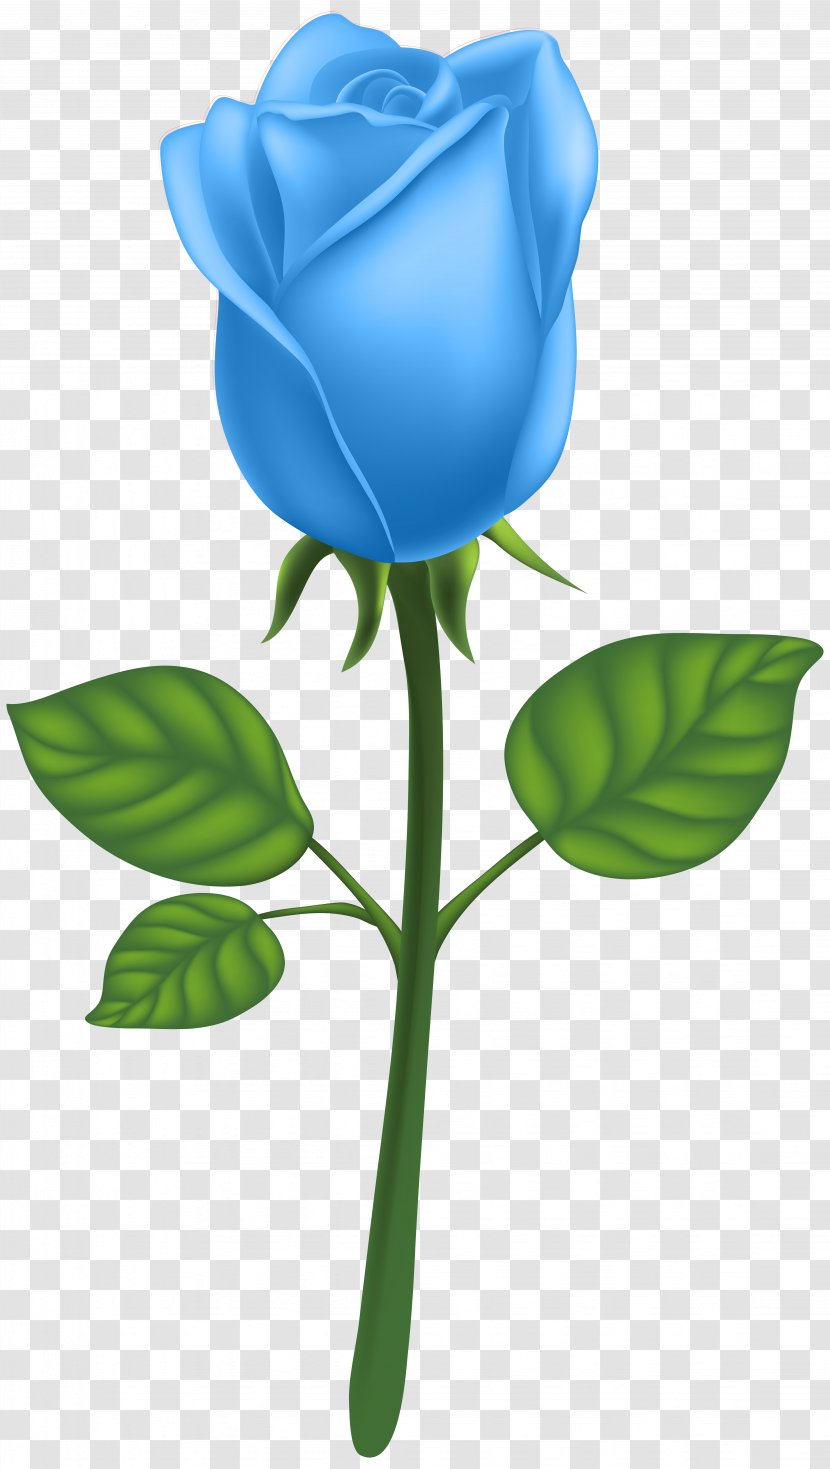 Garden Roses Adobe Illustrator Clip Art - Royalty Free - Blue Deco Rose Image Transparent PNG